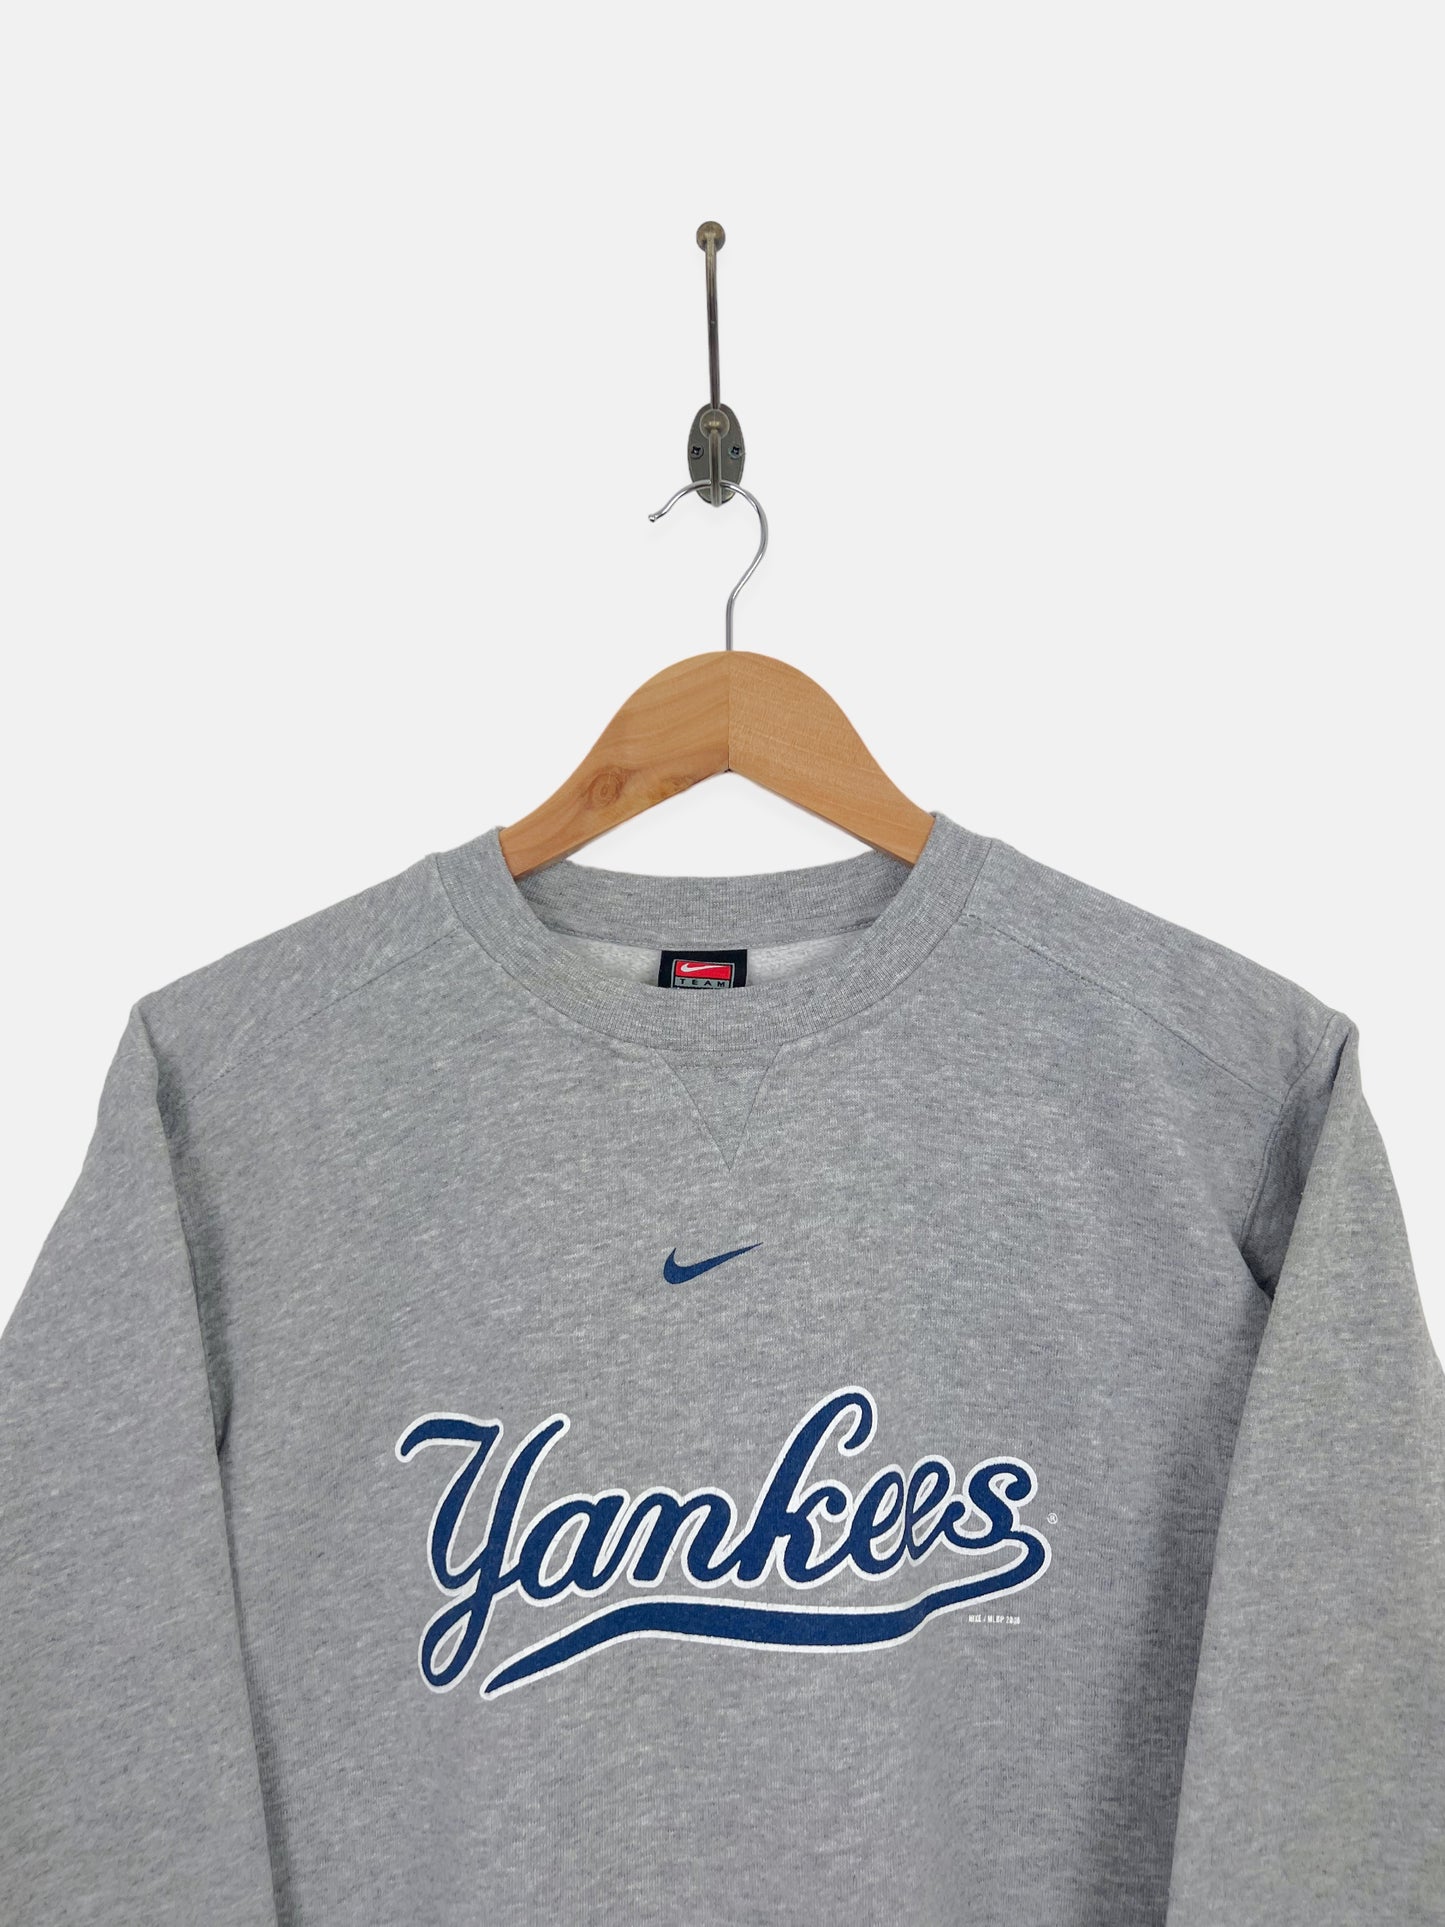 Youth Nike New York Yankees Vintage Sweatshirt